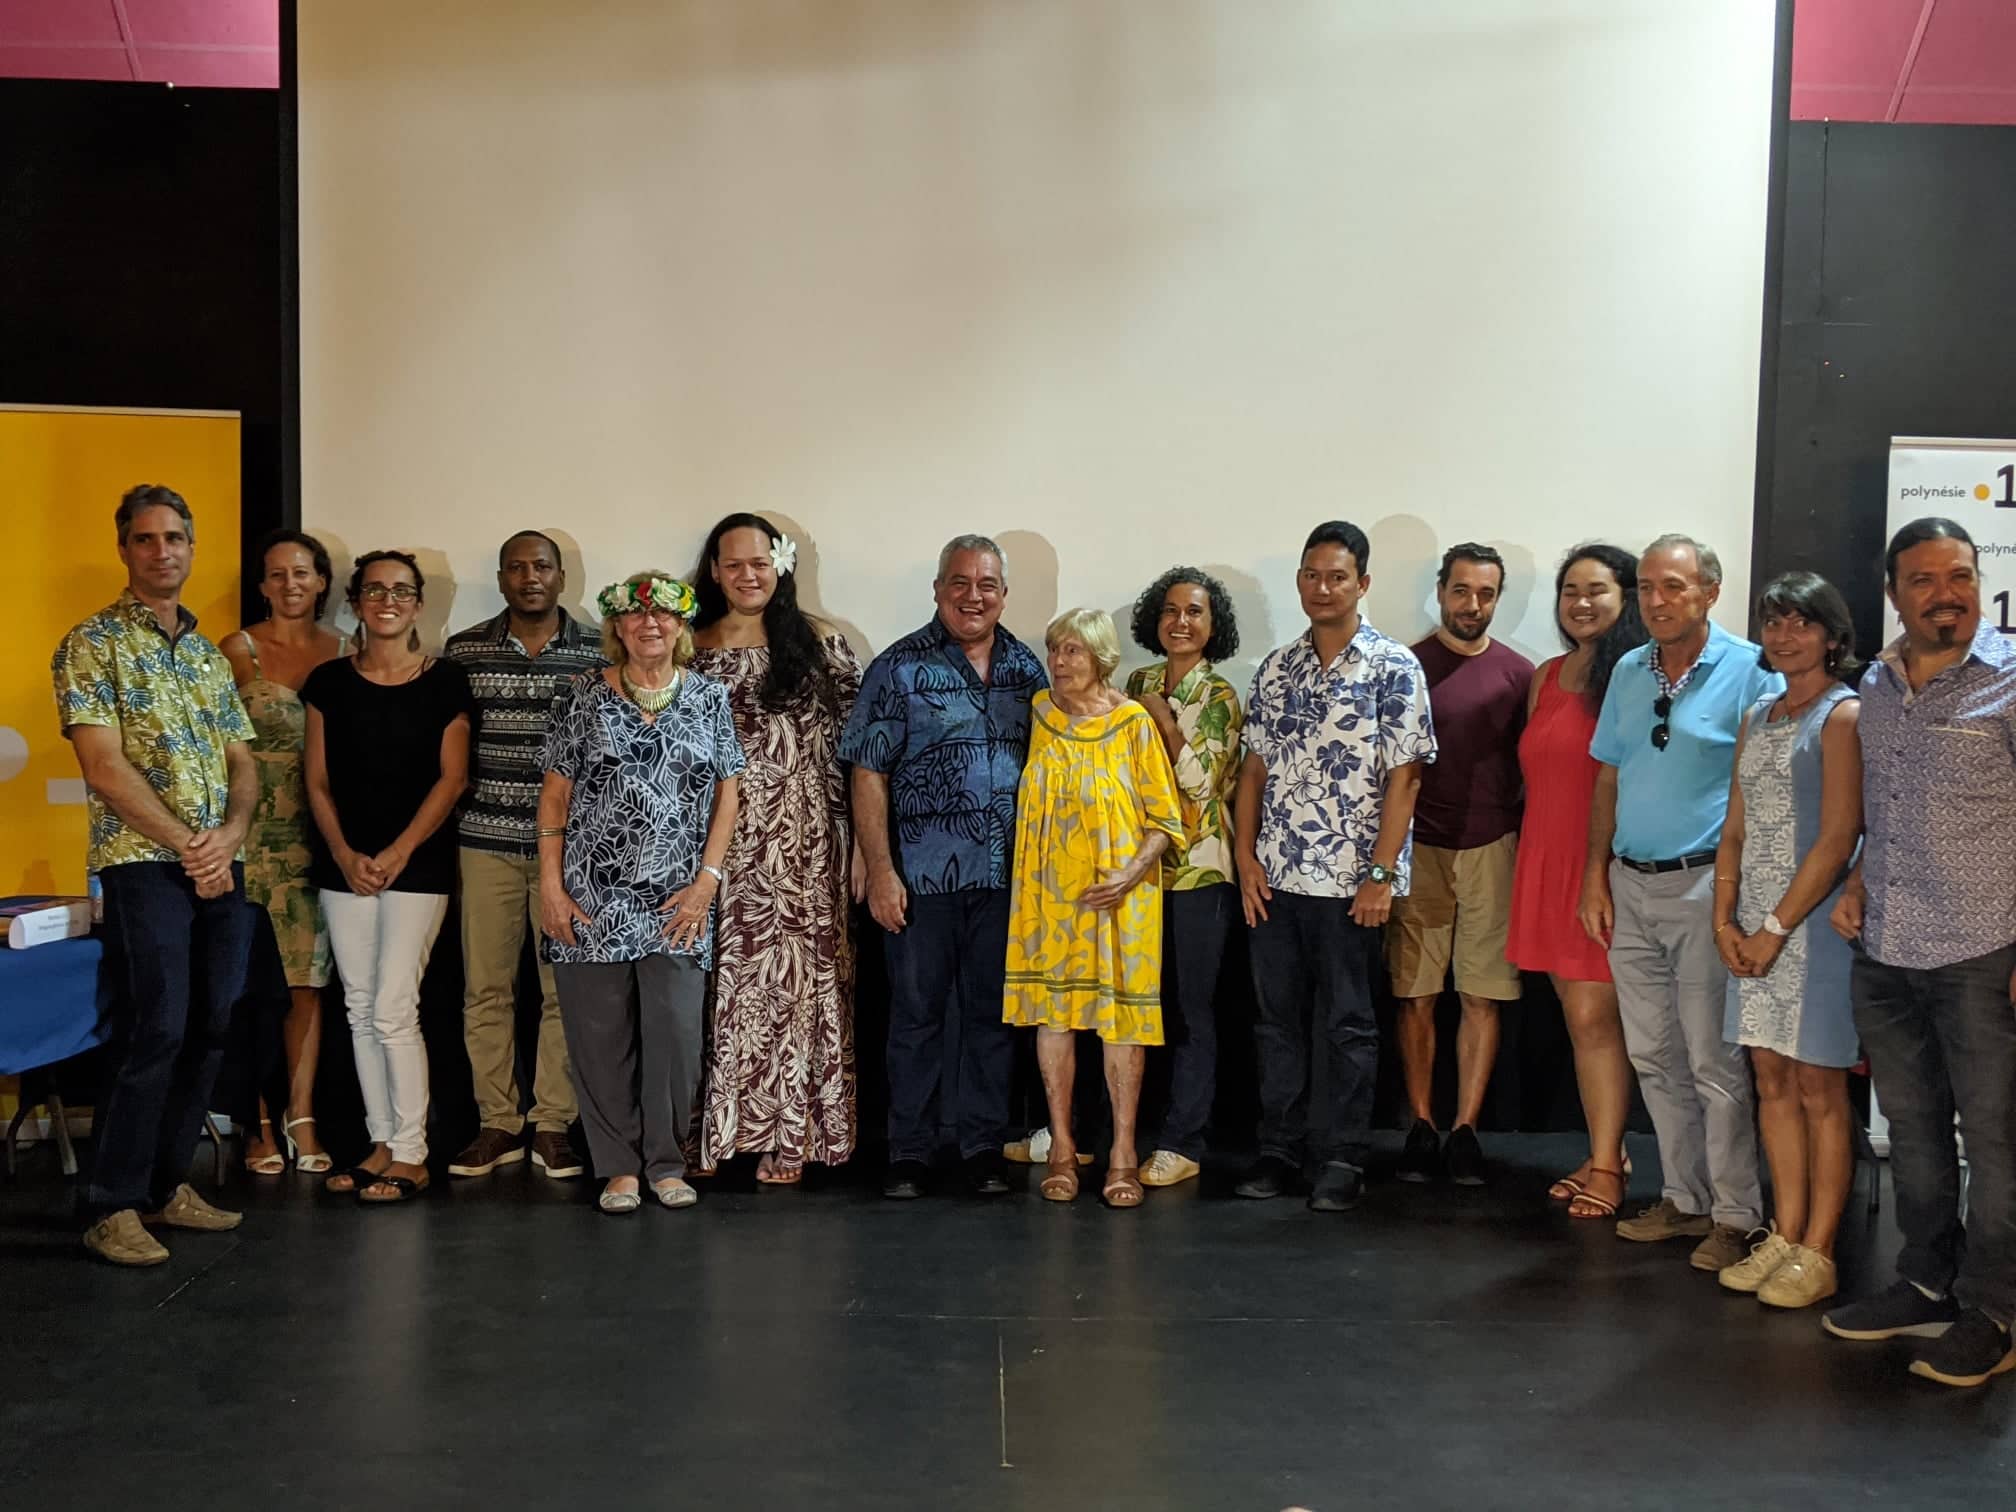 La 17e édition du Festival International du Film documentaire océanien se tiendra du 1er au 9 février à la Maison de la culture de Papeete.